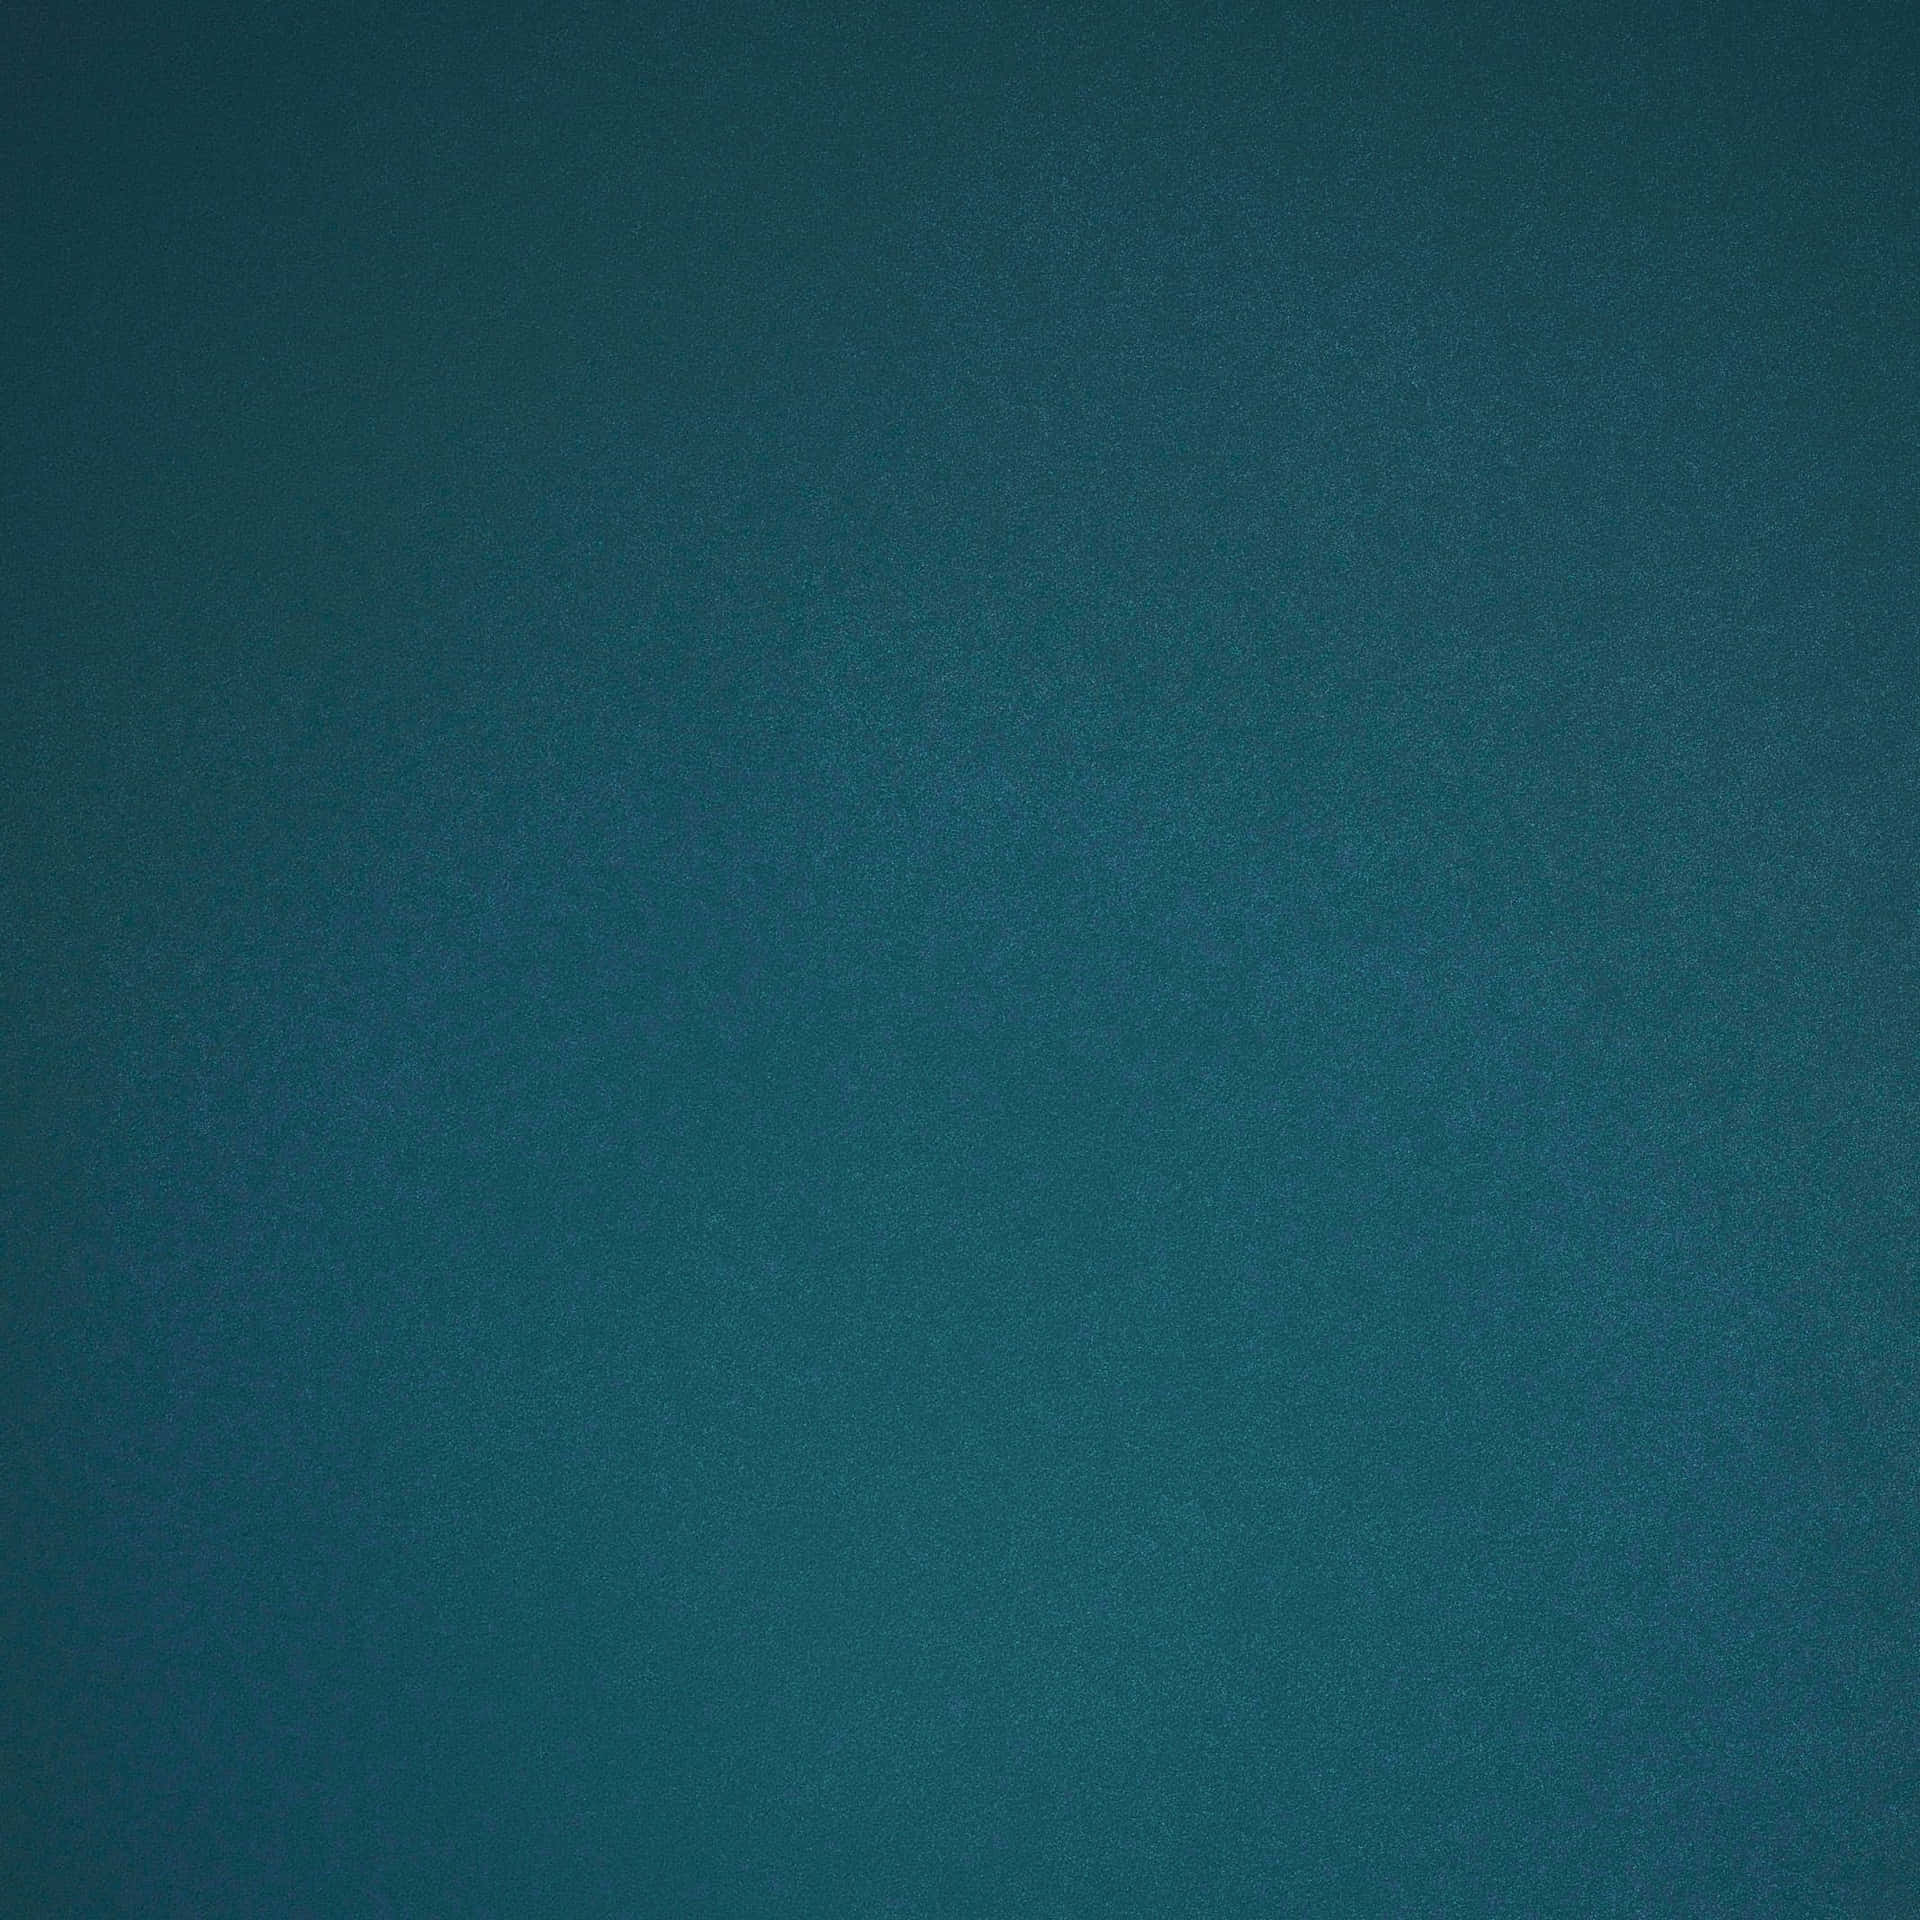 Einlebendiger Hintergrund In Zwei Farbtönen, Blau Und Grau.